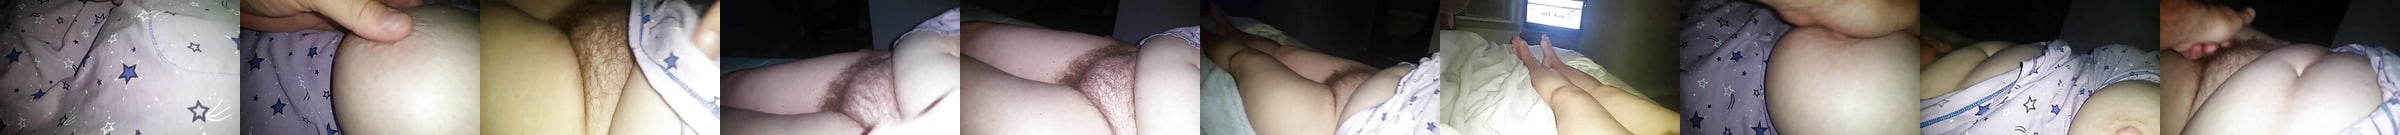 Featured Russ Meyer Big Boob Legend Melissa Mounds Porn Videos Xhamster